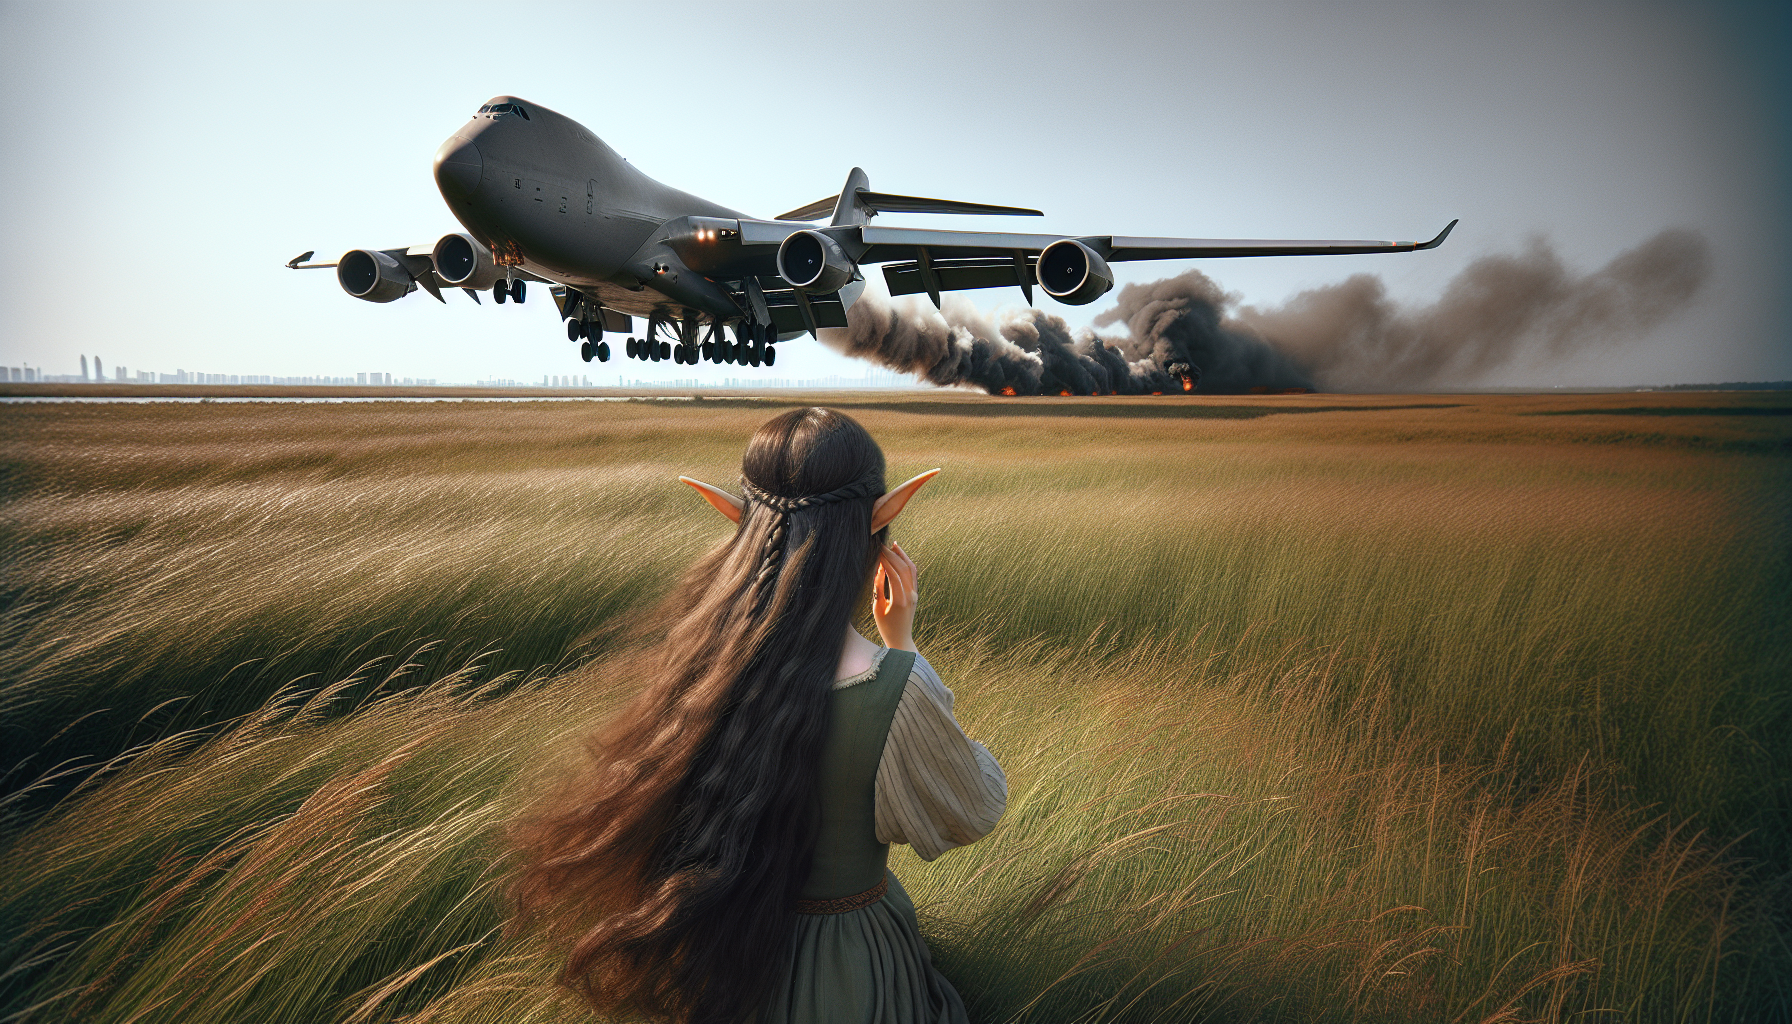 Di tempat antah berantah Seorang gadis elf melihat sebuah Pesawat kargo 747-8f melakukan pendaratan darurat disebuah padang rumput yang luas